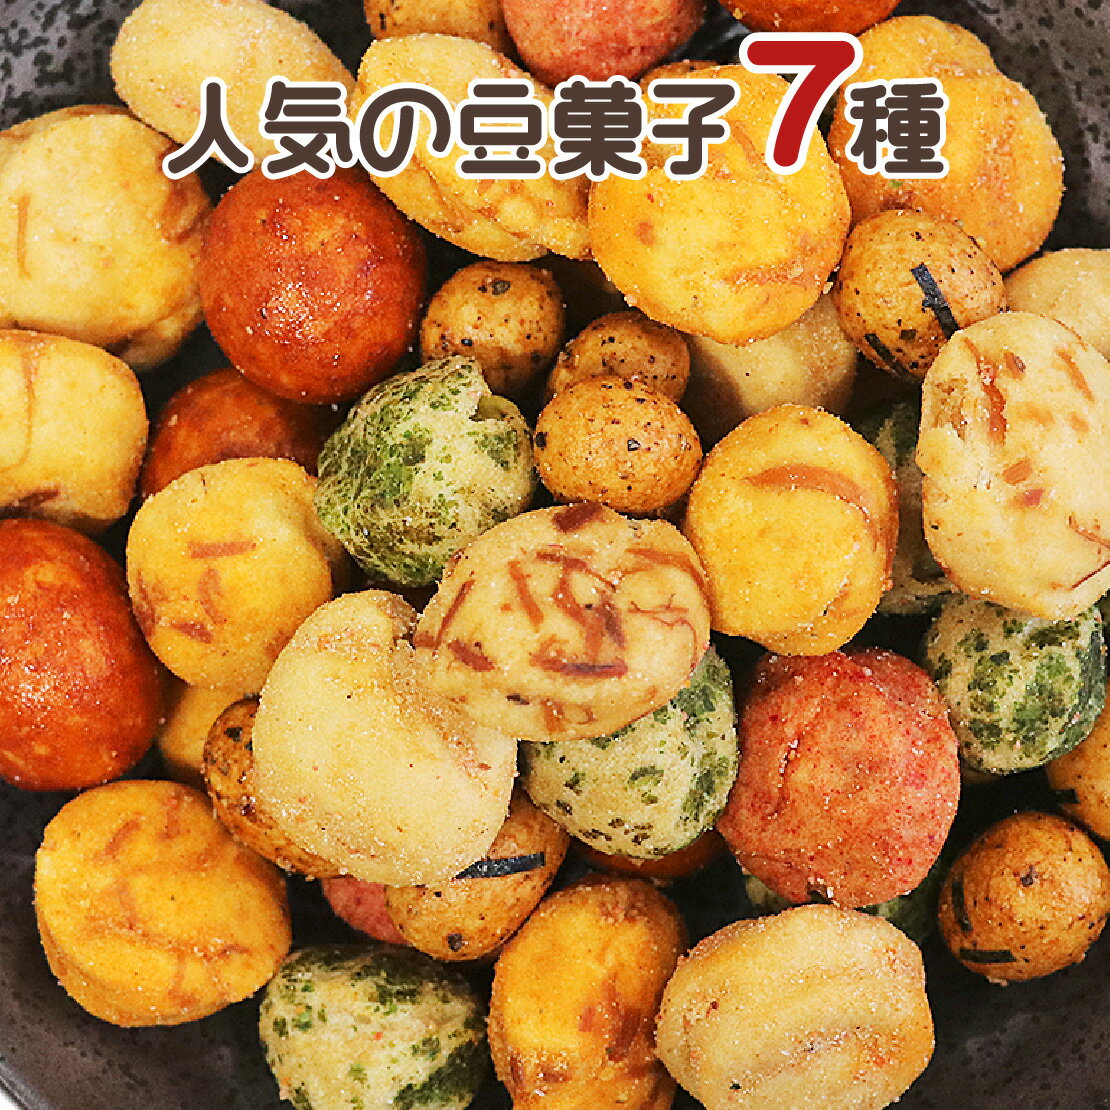 ピーナツ糖 沖縄名産 150g×1個 ピーナッツ黒糖 とも言われております。